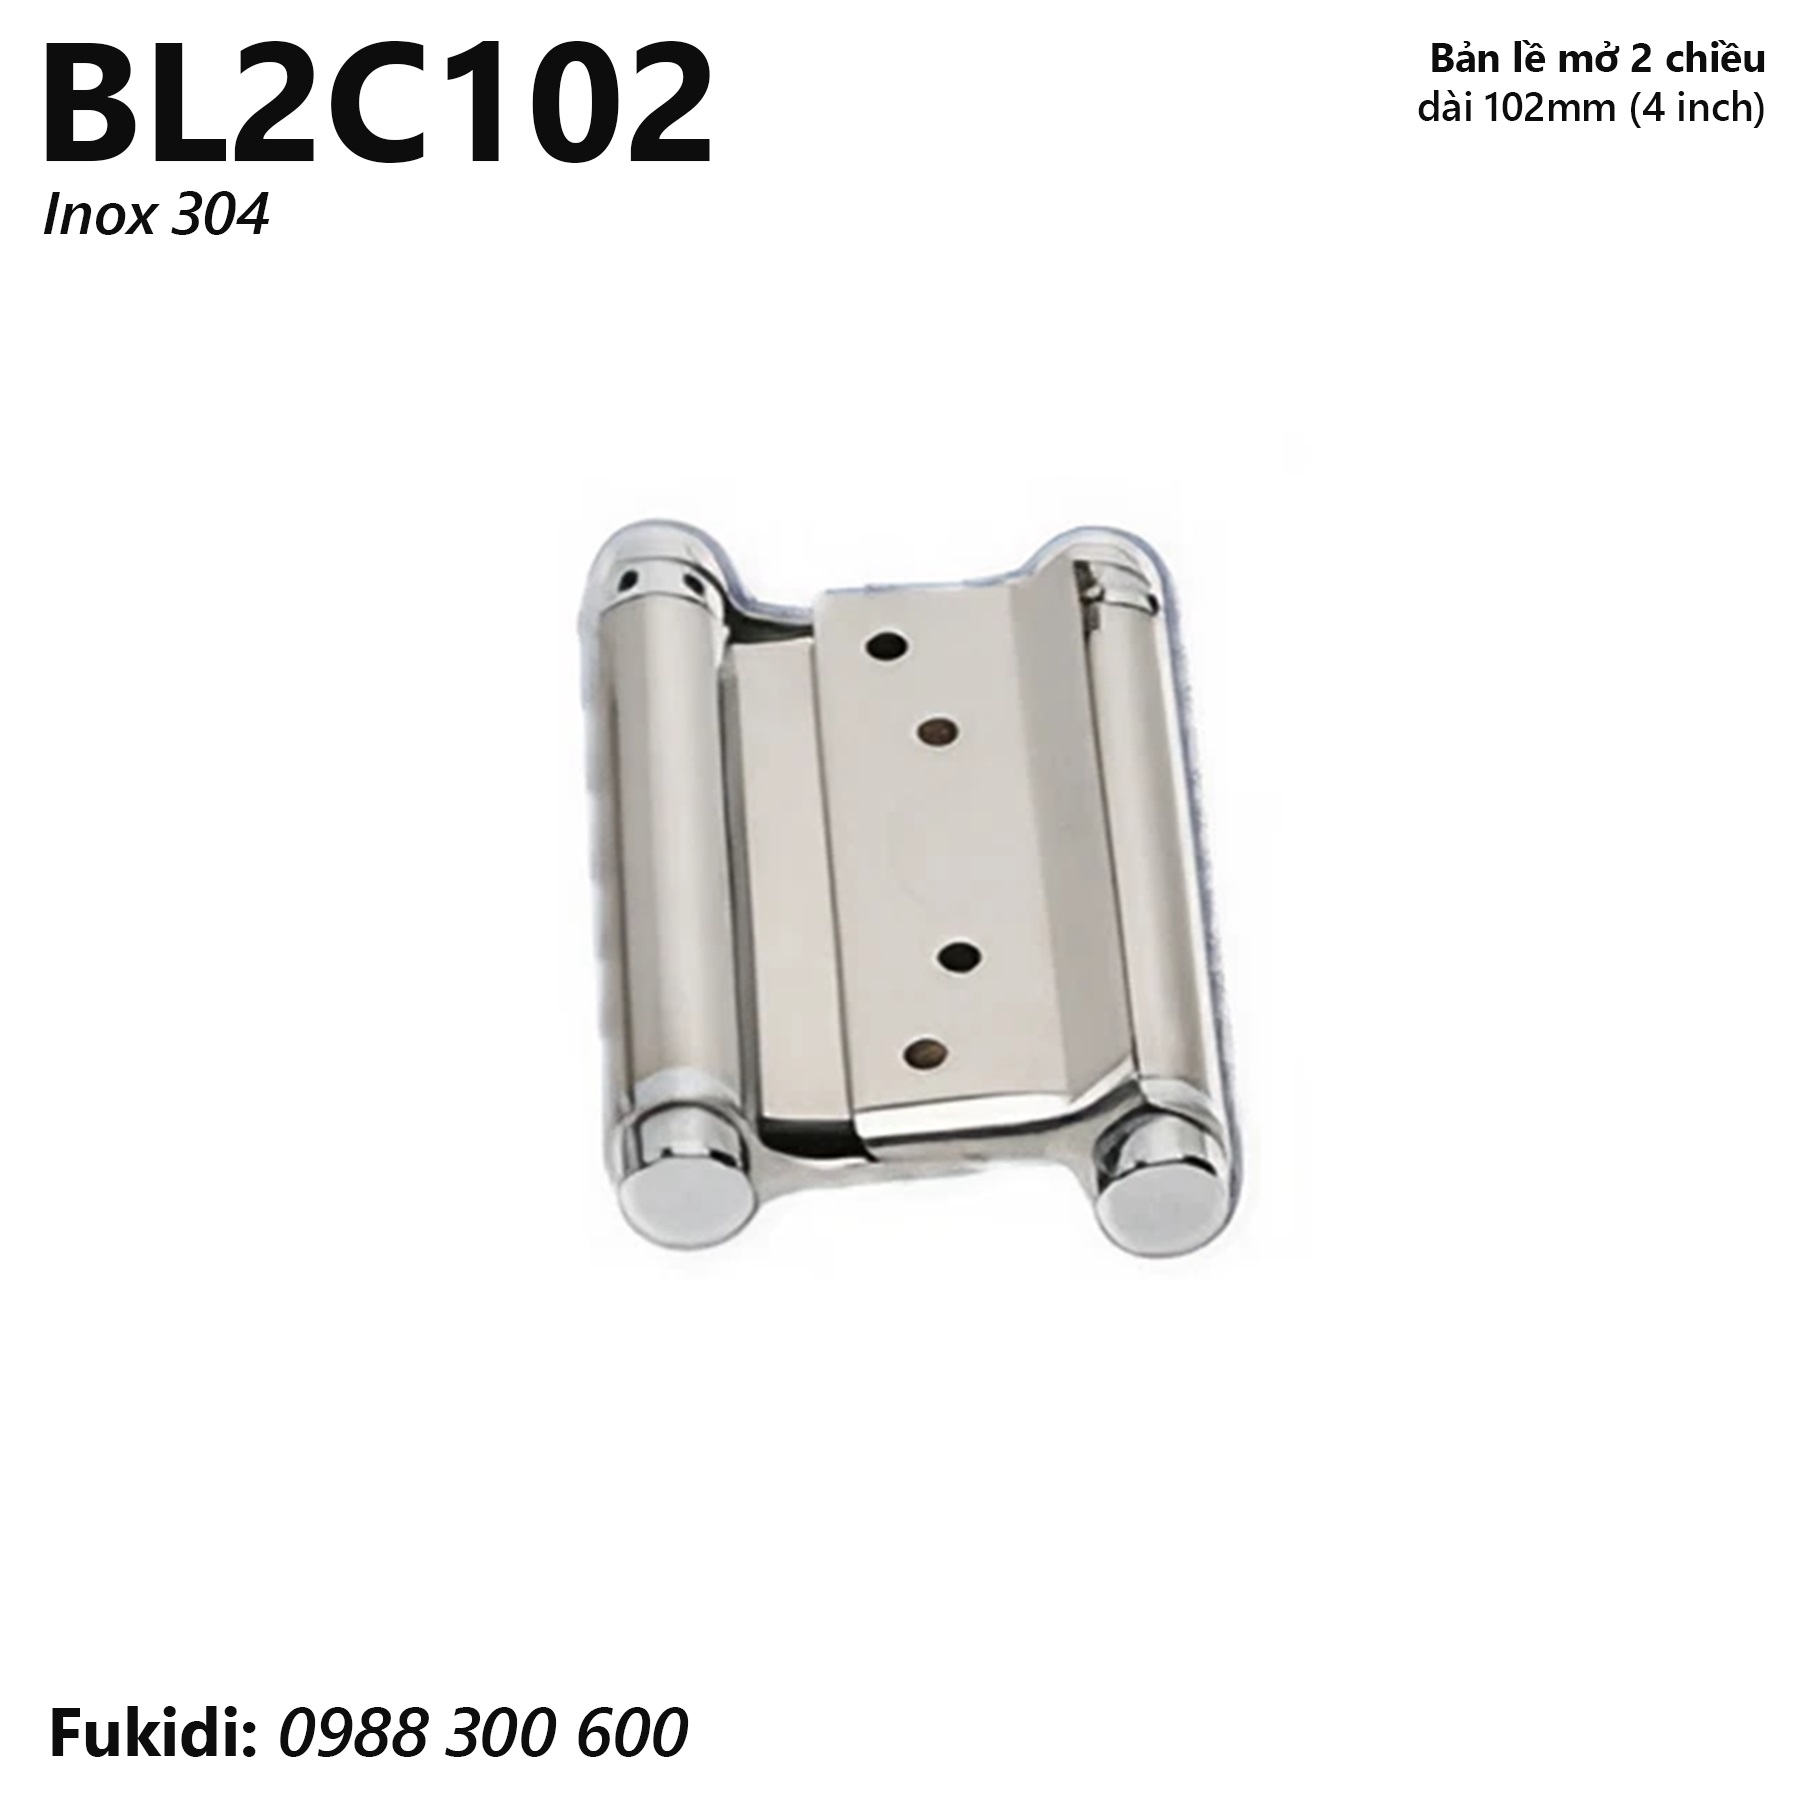 Bản lề mở 2 chiều inox 304 dày 1.5mm, size 102mm (4 inch) - BL2C102